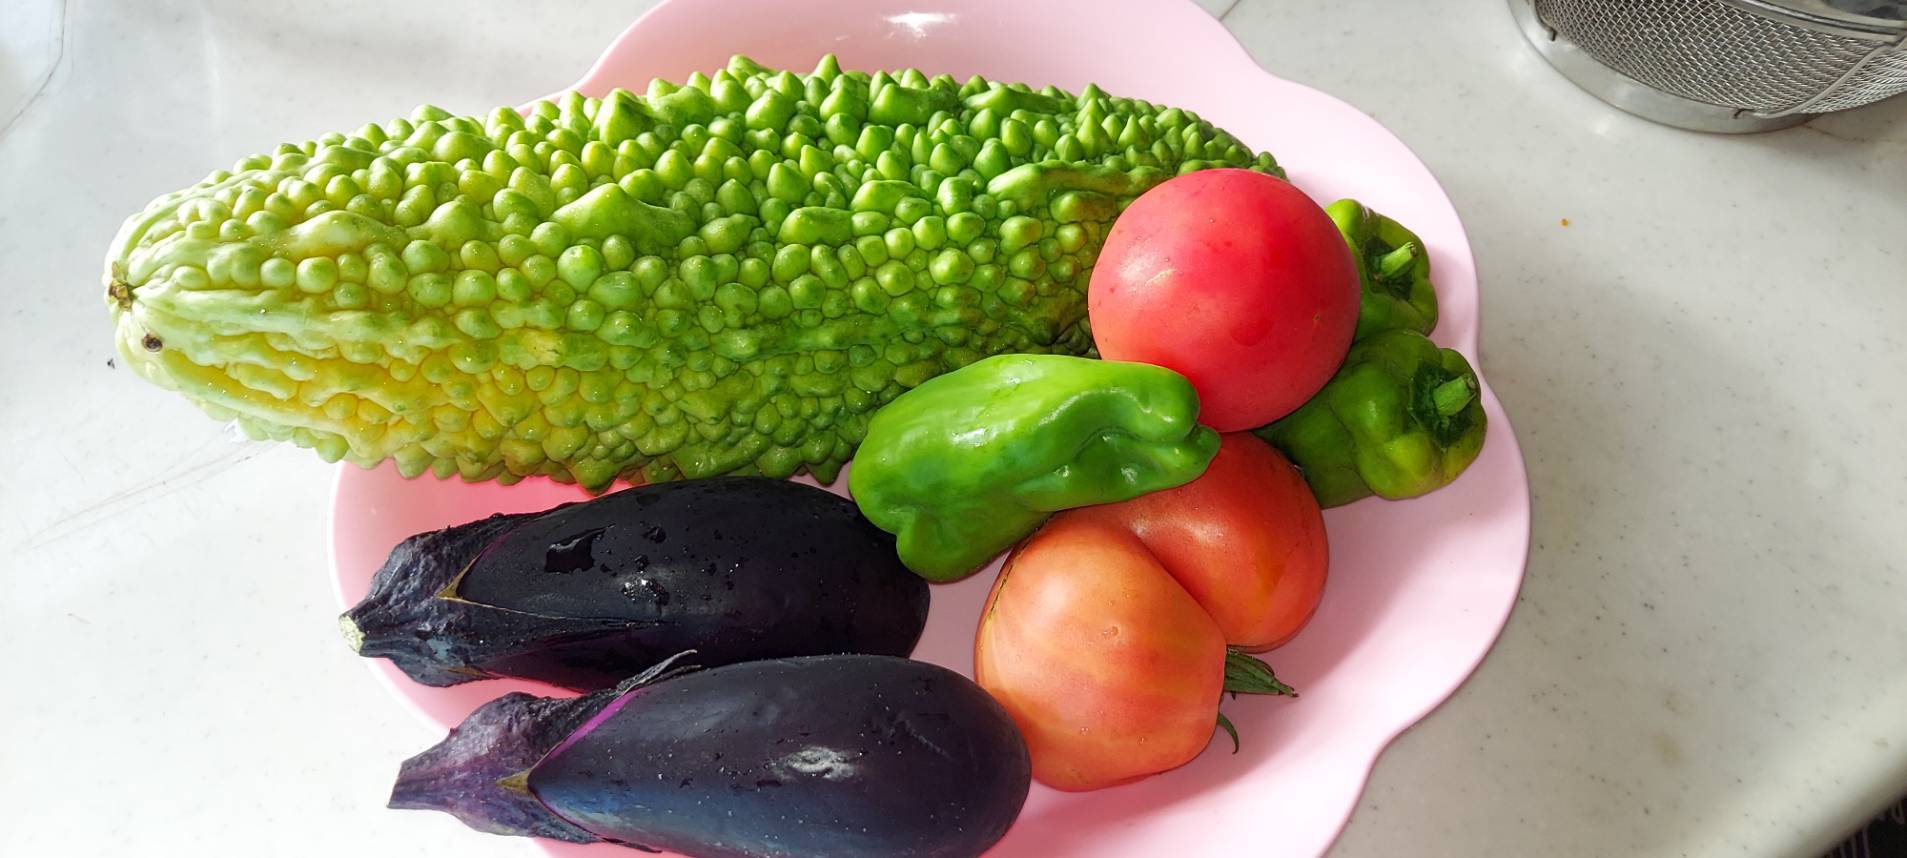 旬の野菜たち つくば住生活 石岡店のブログ 写真1